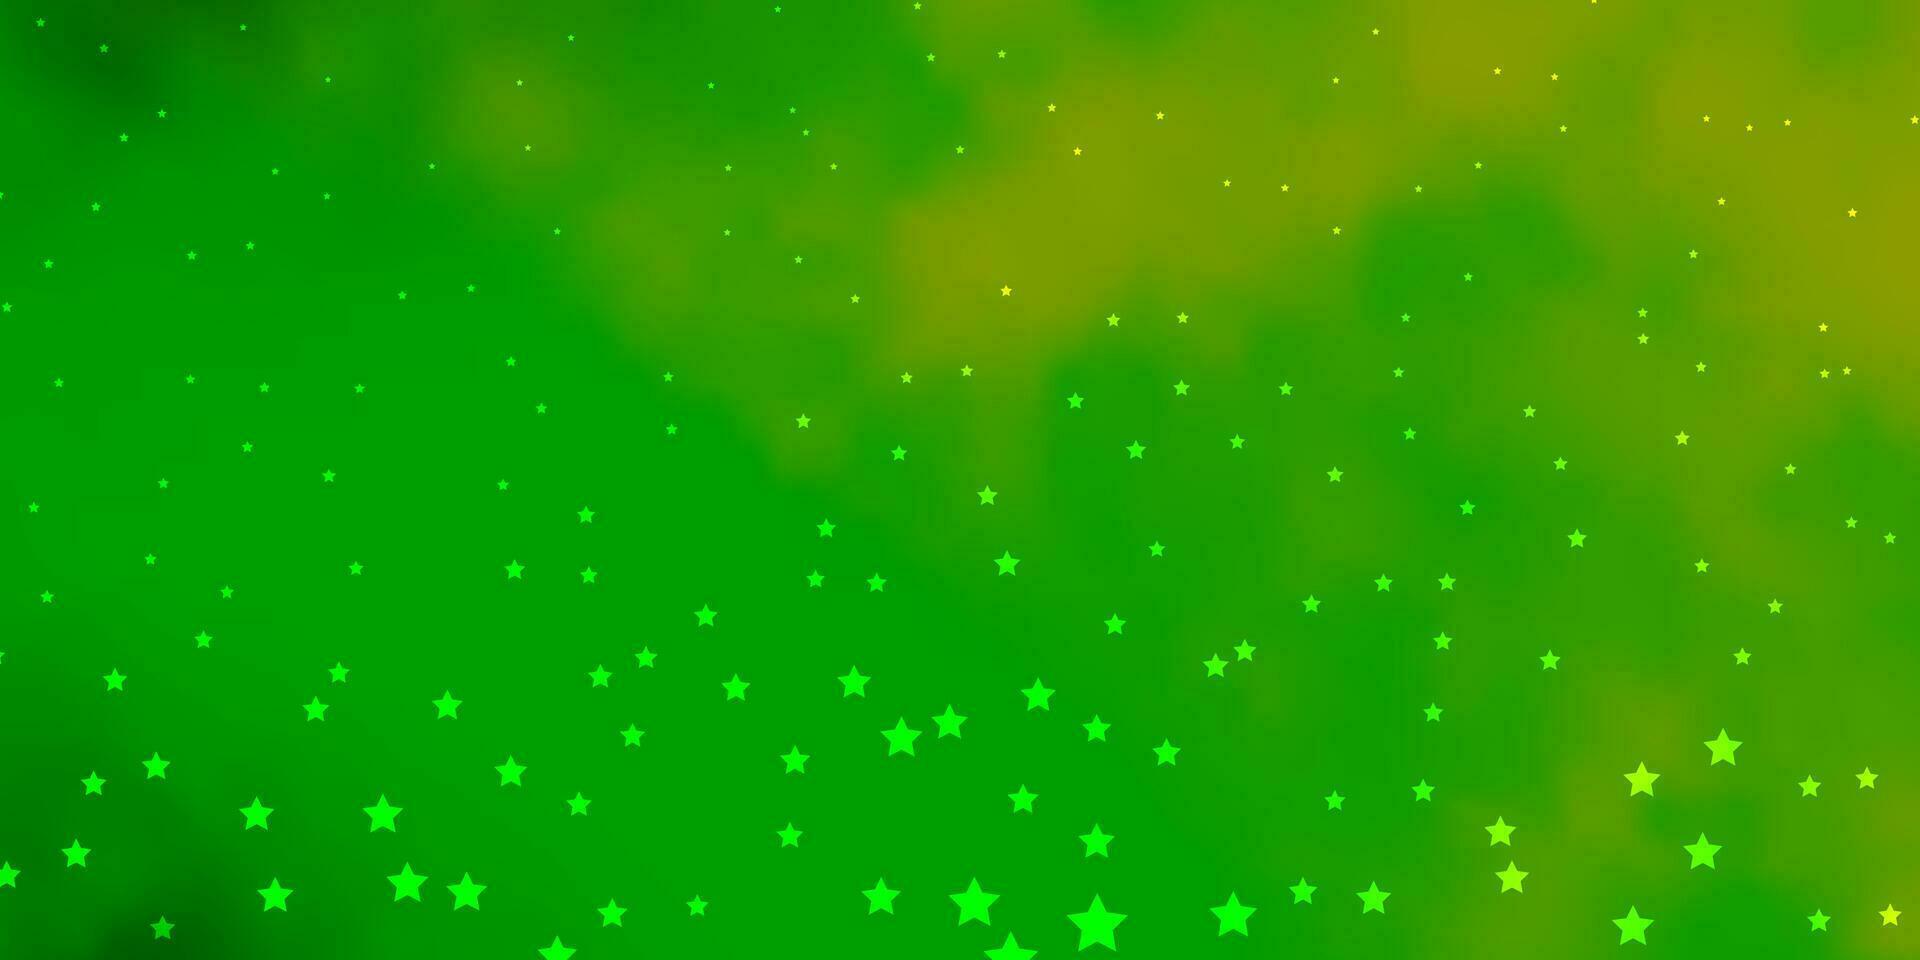 sfondo vettoriale verde scuro, giallo con stelle piccole e grandi.